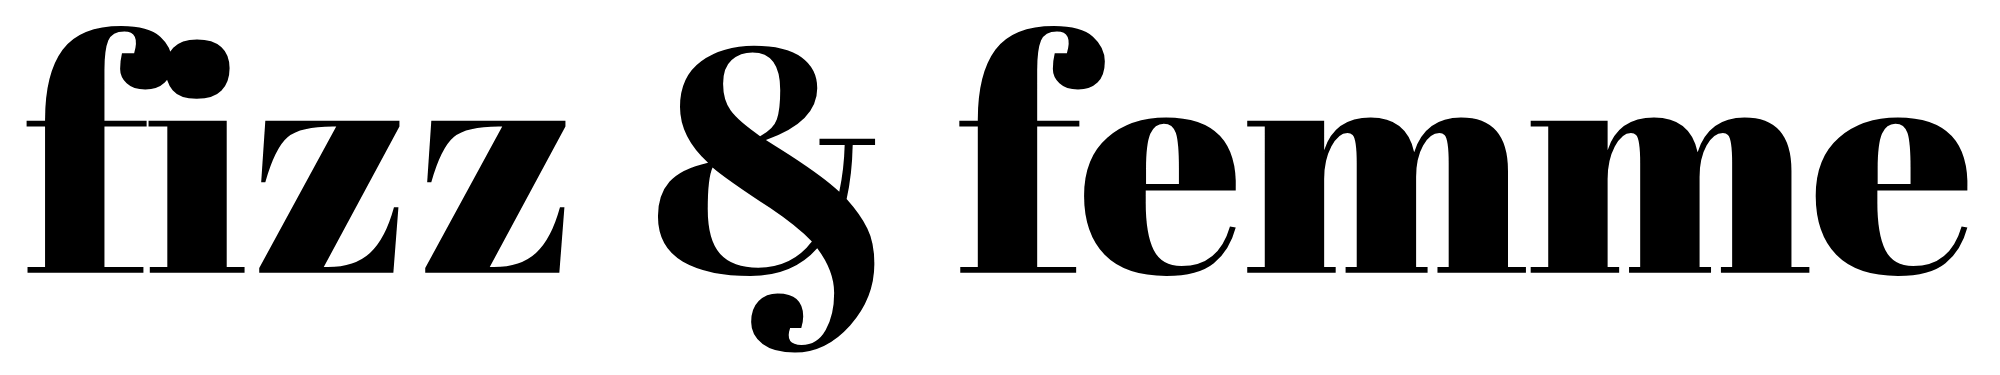 fizz & femme logo